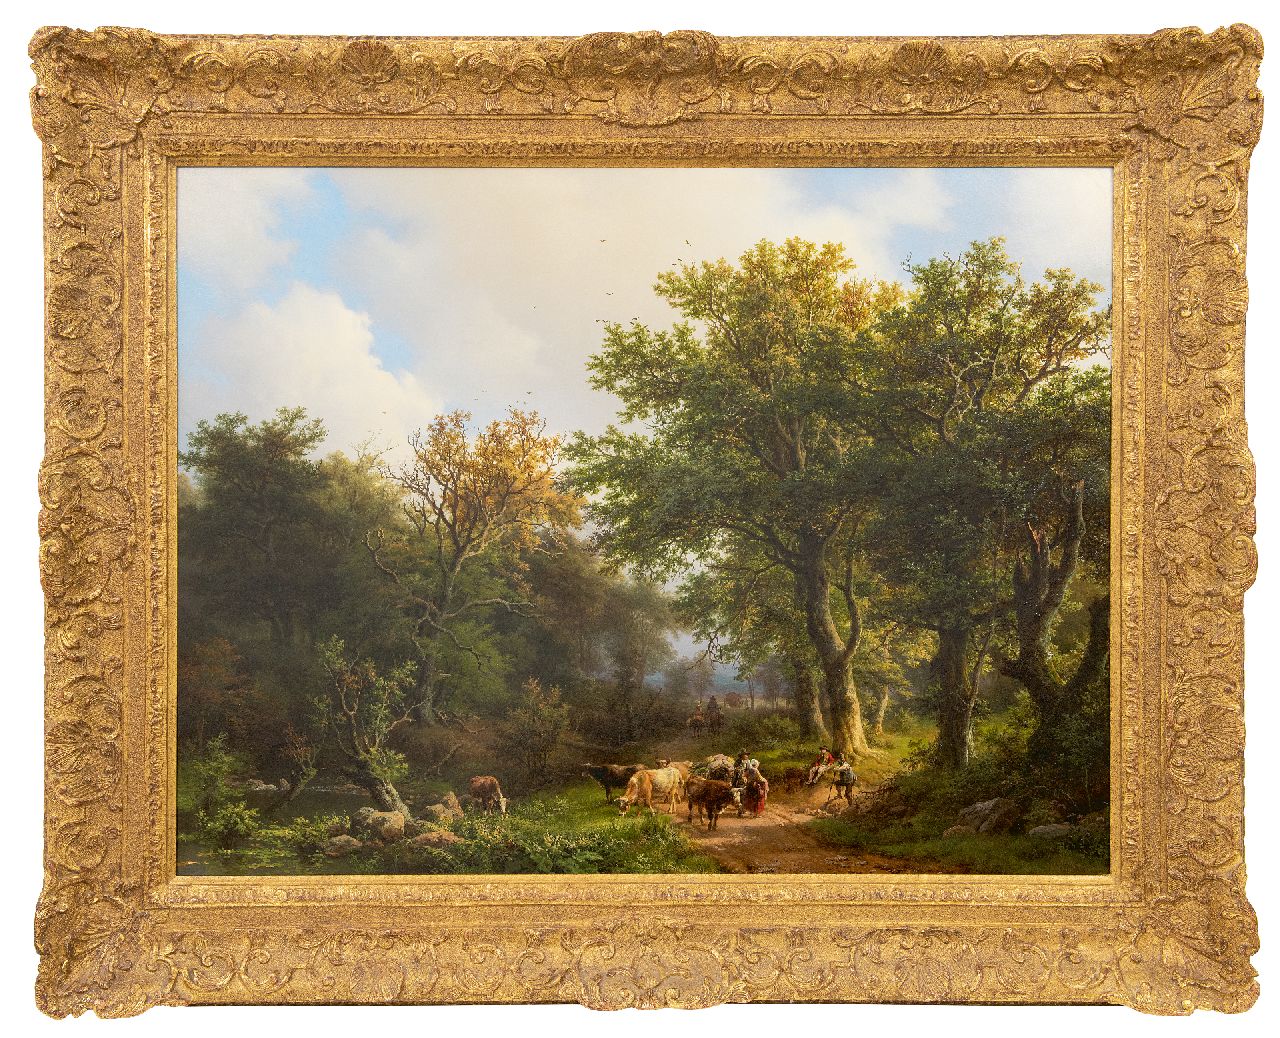 Koekkoek B.C.  | Barend Cornelis Koekkoek | Schilderijen te koop aangeboden | Zomers bosgezicht met vee en figuren, olieverf op paneel 69,1 x 90,2 cm, gesigneerd rechtsonder en gedateerd 1853